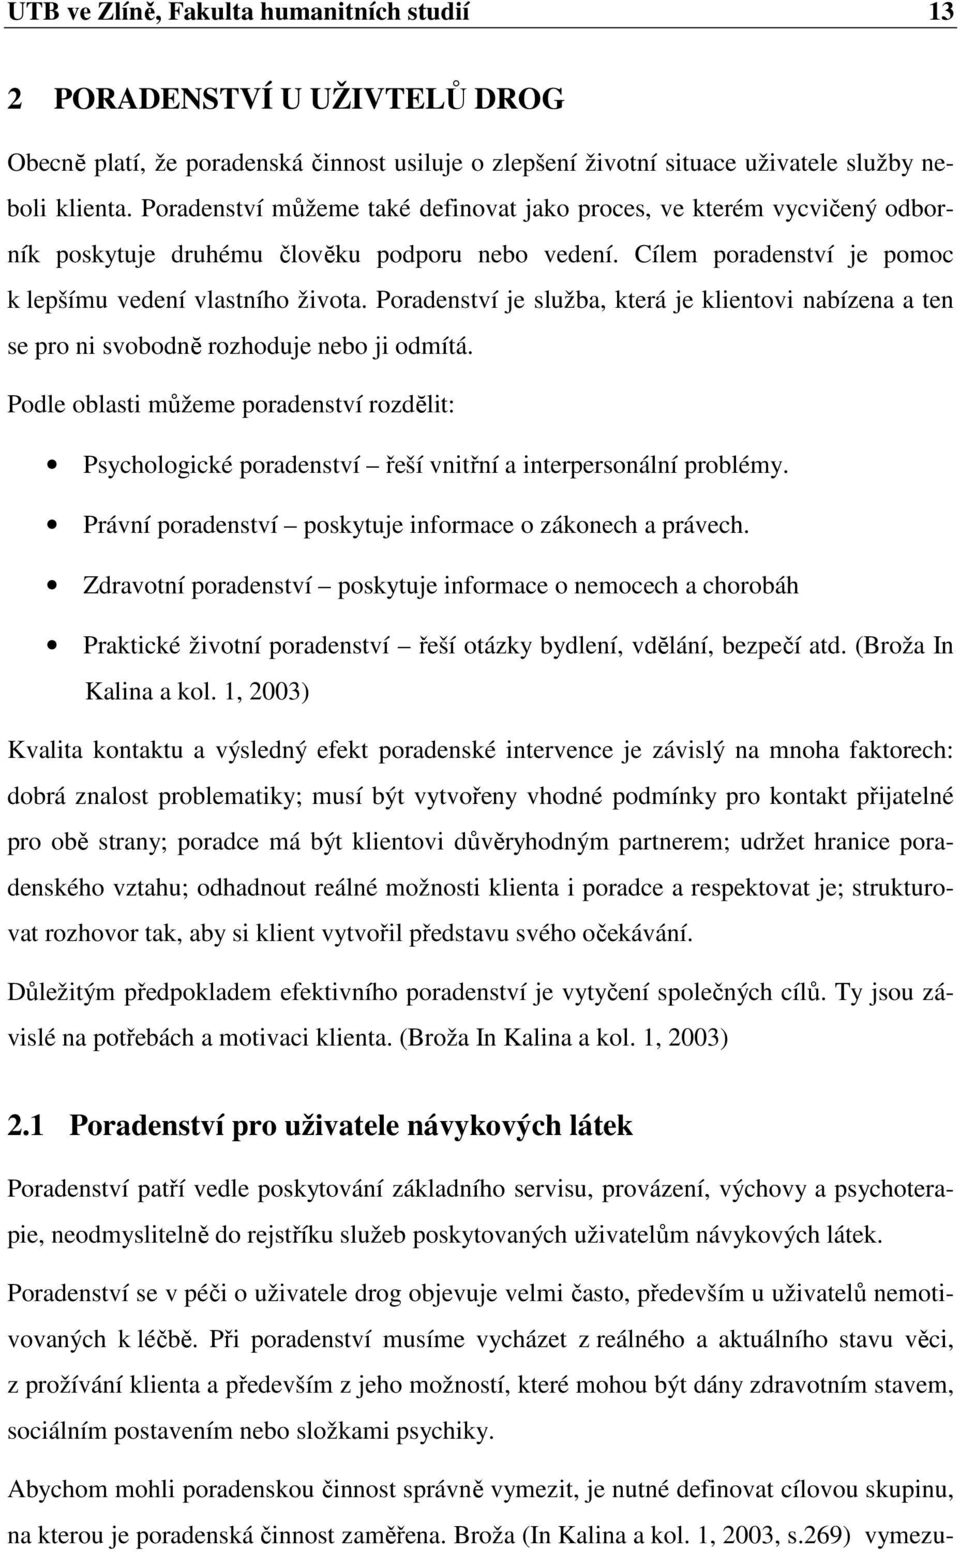 Informovanost studentů středních škol o činnosti kontaktních center pro  drogově závislé. Radka Valkovičová - PDF Free Download